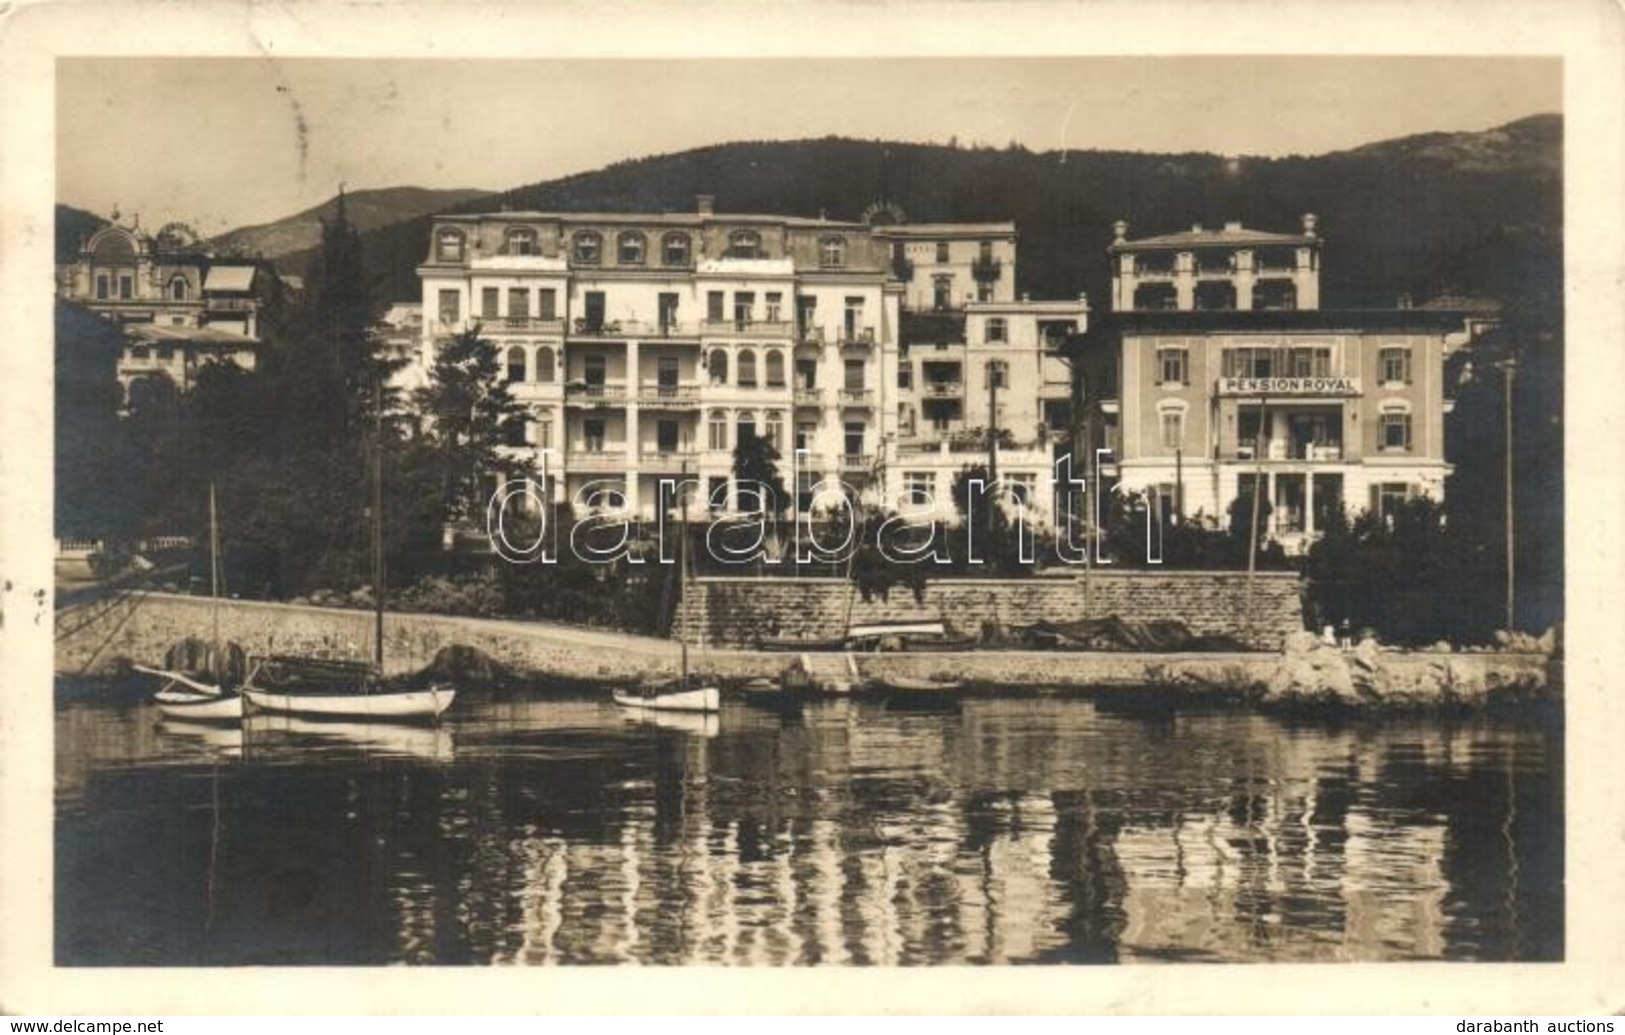 T2 Abbazia, Grand Hotel, Pensione Royal - Zonder Classificatie